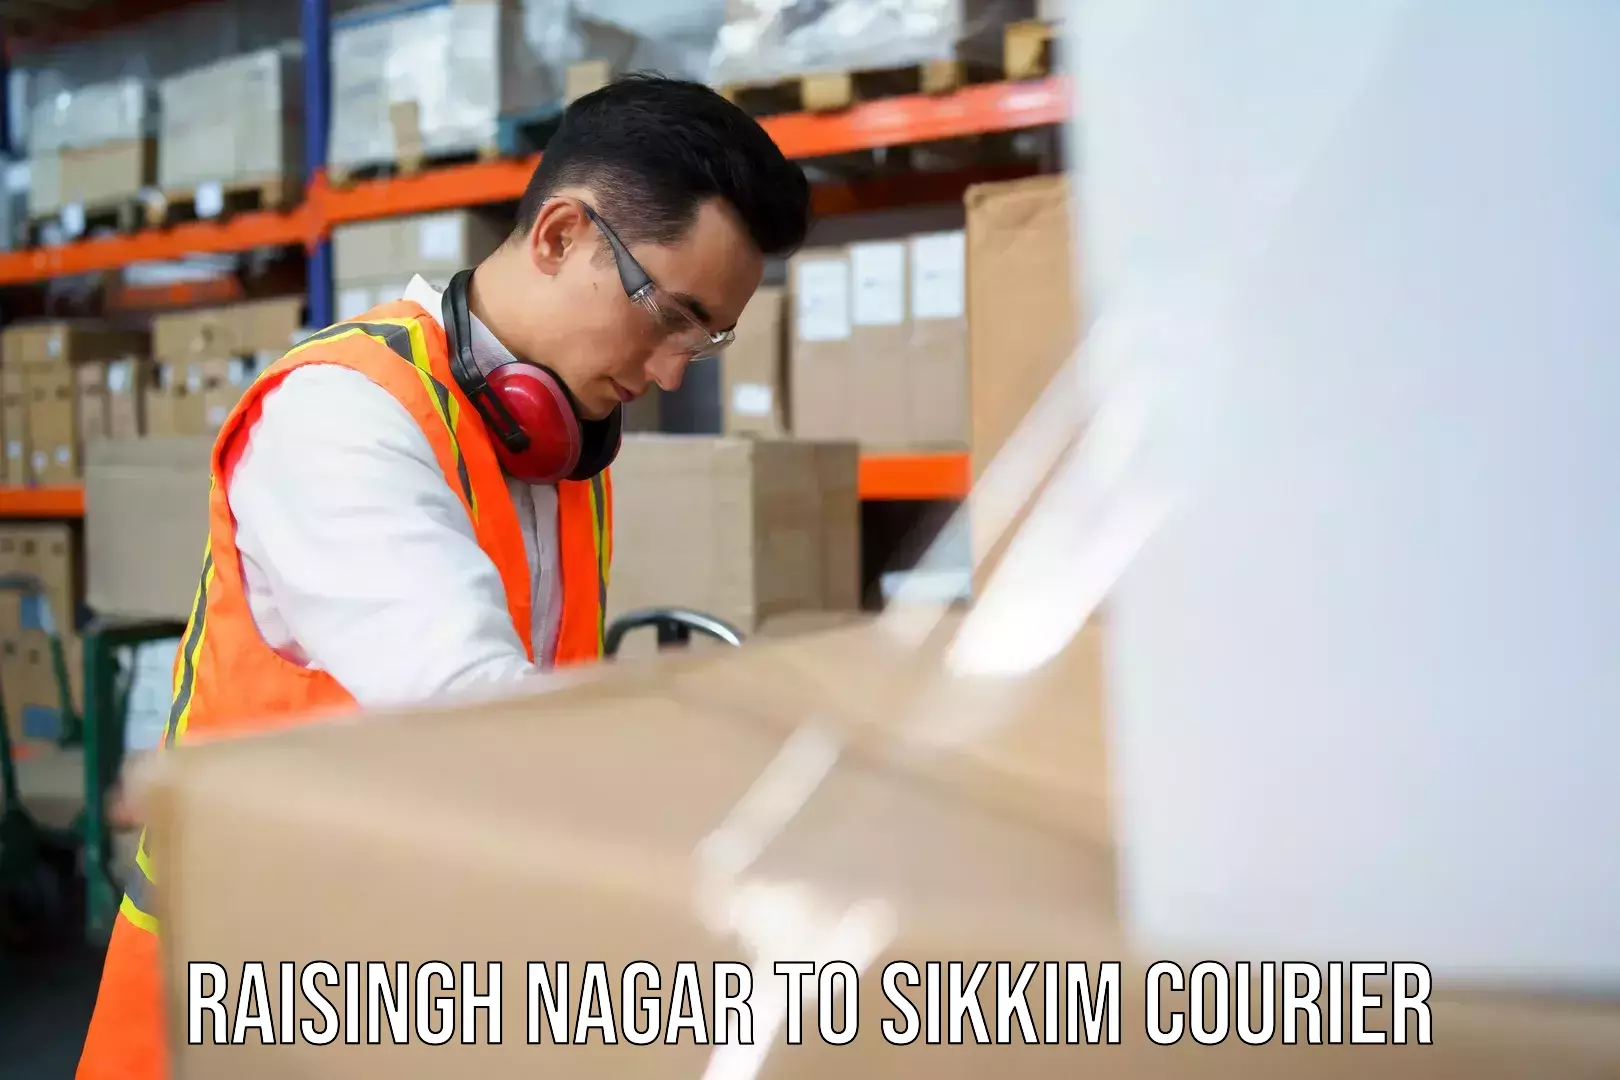 24-hour courier services Raisingh Nagar to Sikkim